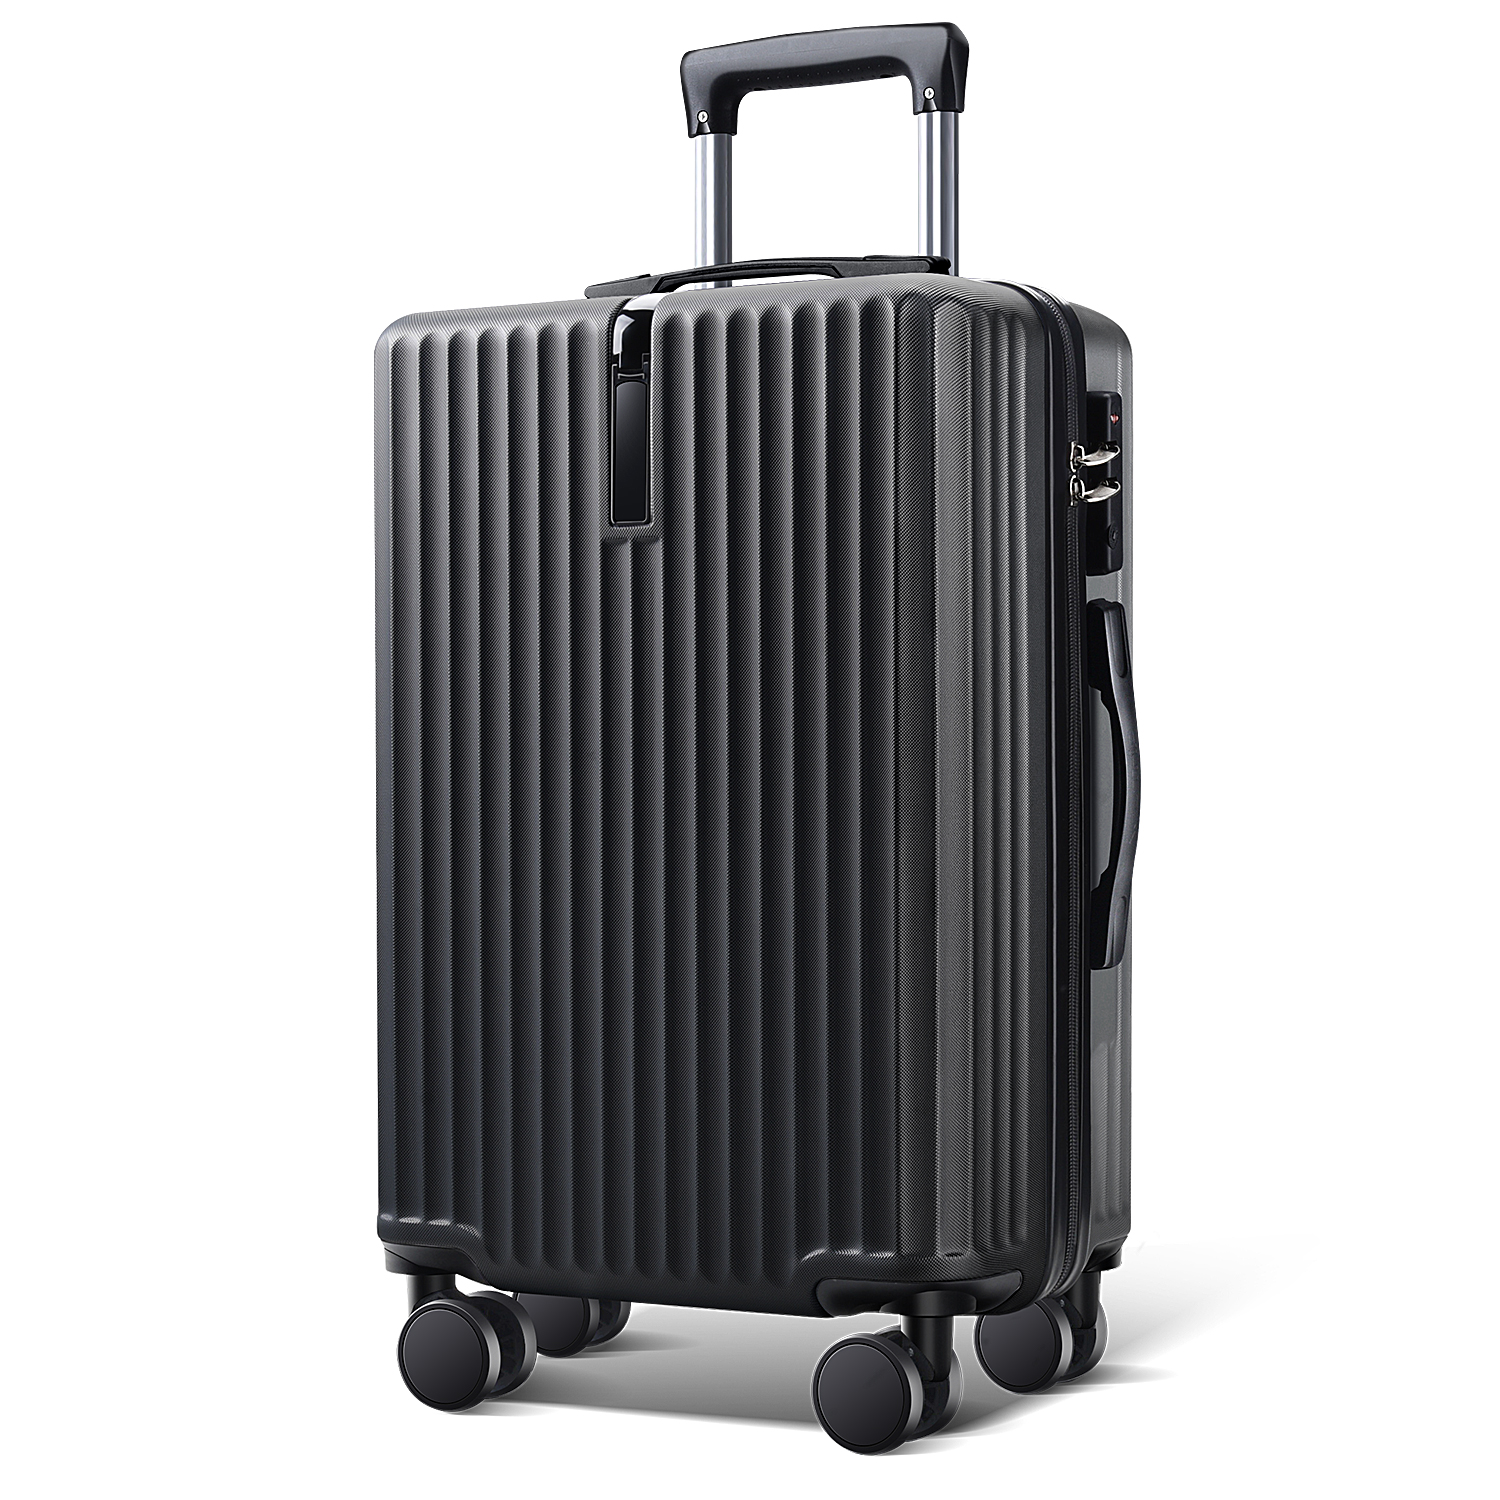 スーツケース 20インチ スーツケース キャリーケース キャリーバッグ 3カラー選ぶ S M Lサイズ 1-3日用 泊まる 軽量設計 大容量 海外旅行  GOTOトラベル 旅行